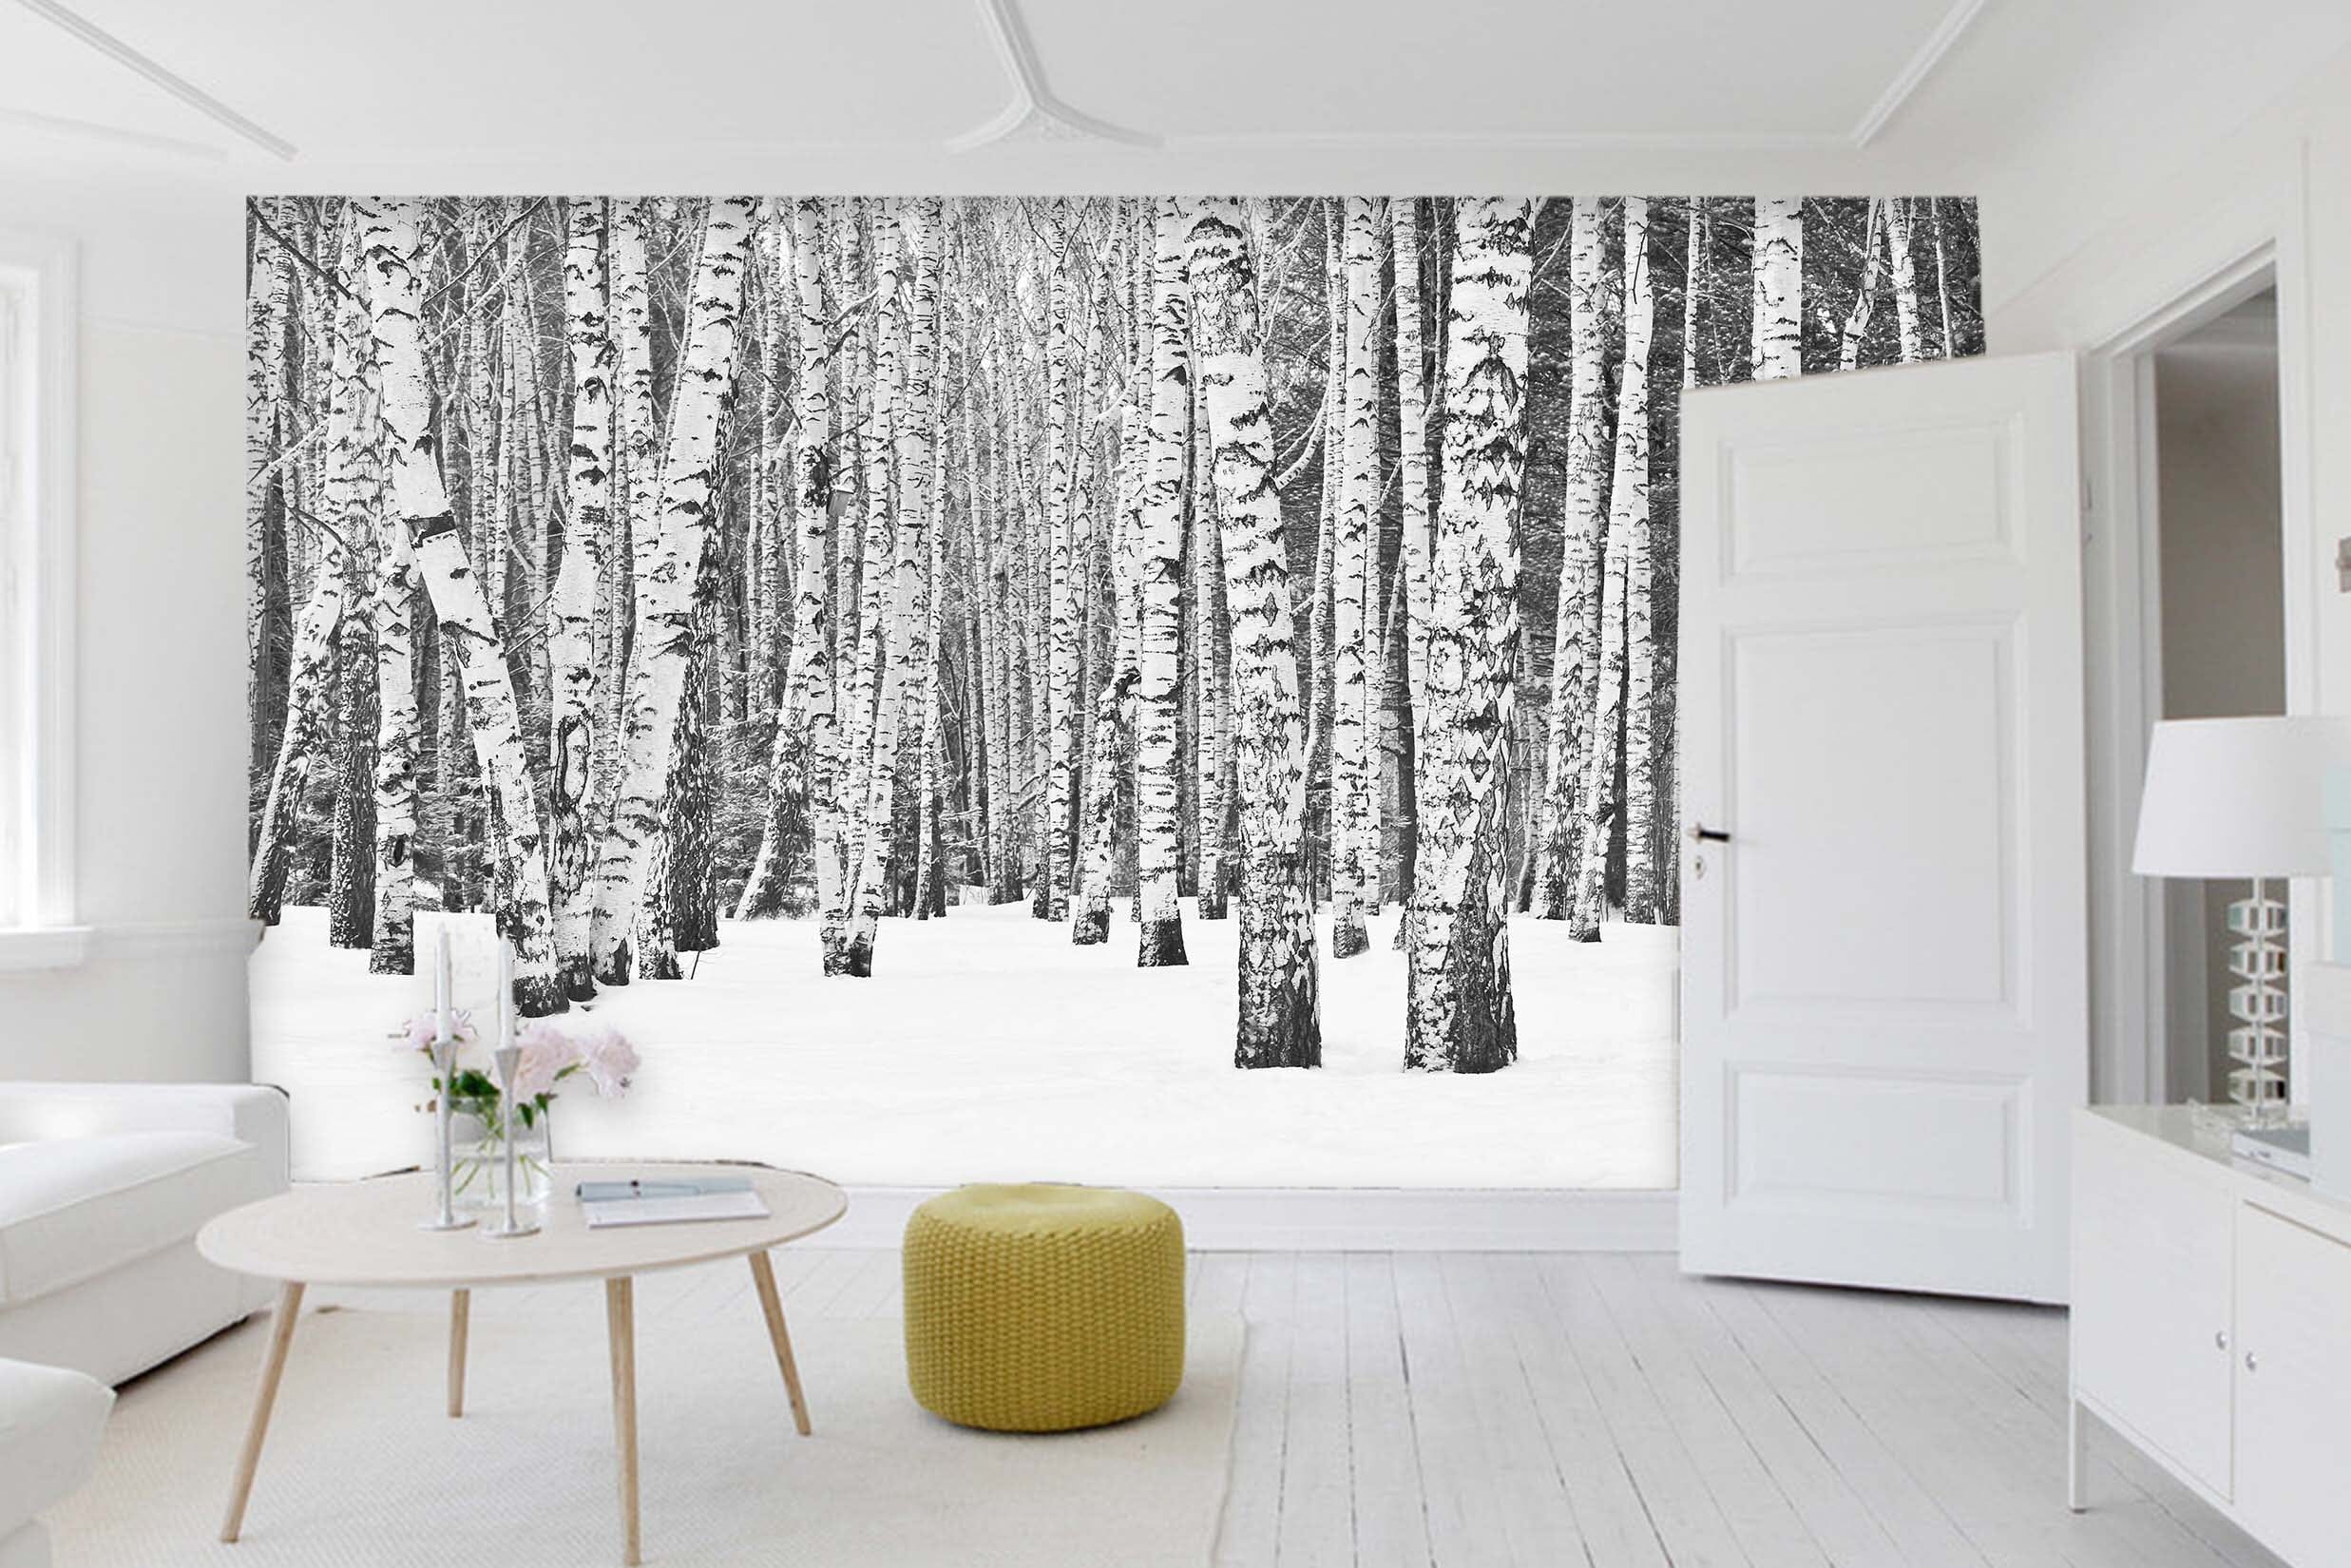 3D Snow Forest 11 Wall Murals Wallpaper AJ Wallpaper 2 